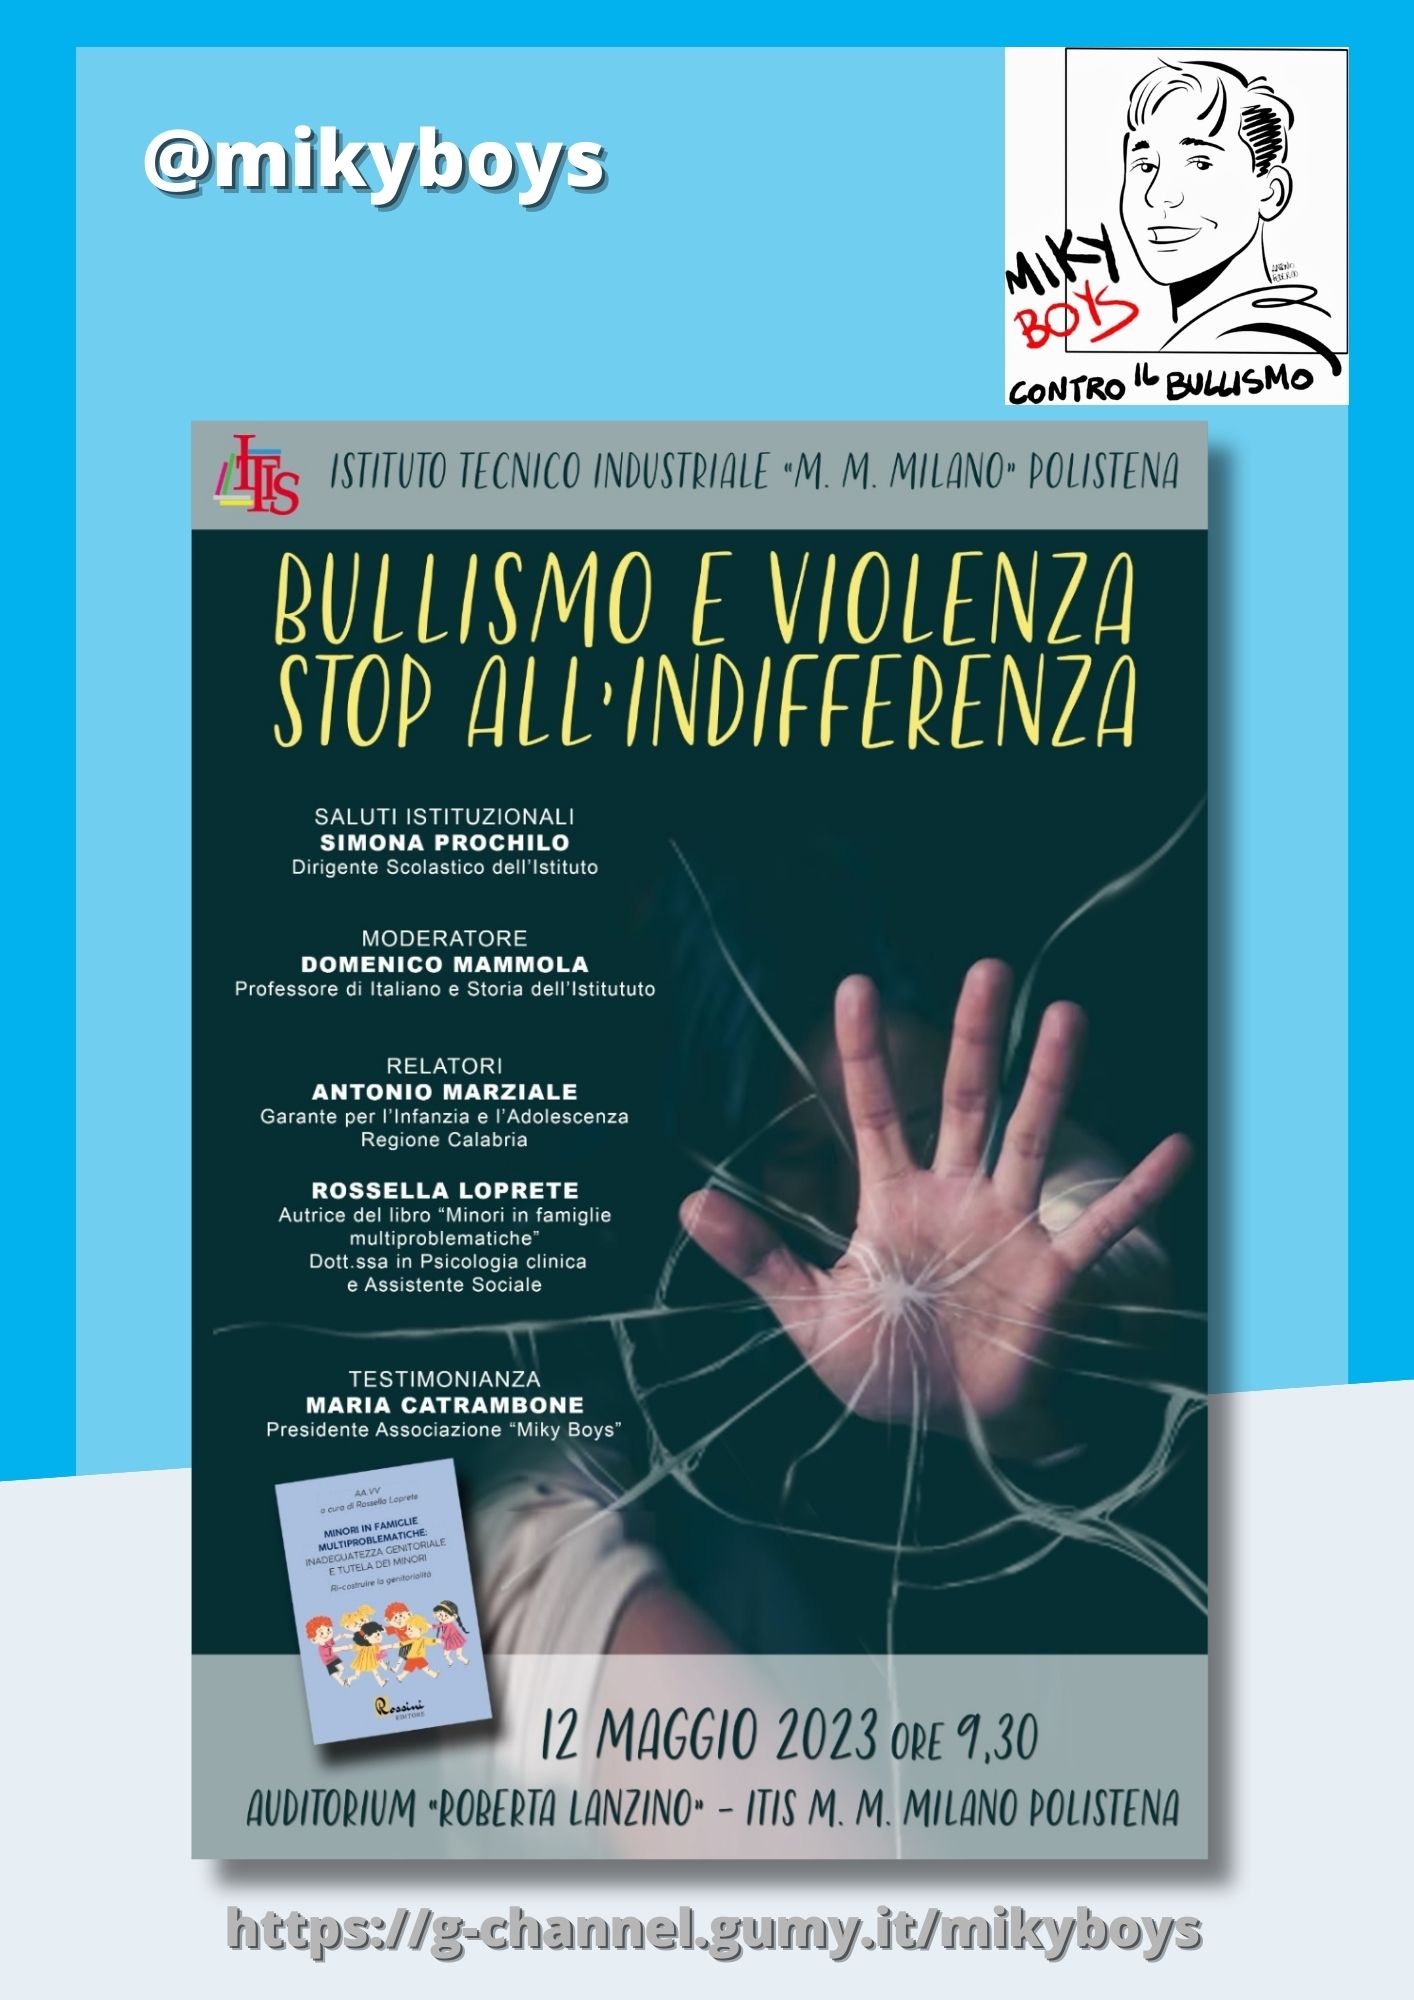 Bullismo e Violenza: basta all'indifferenza